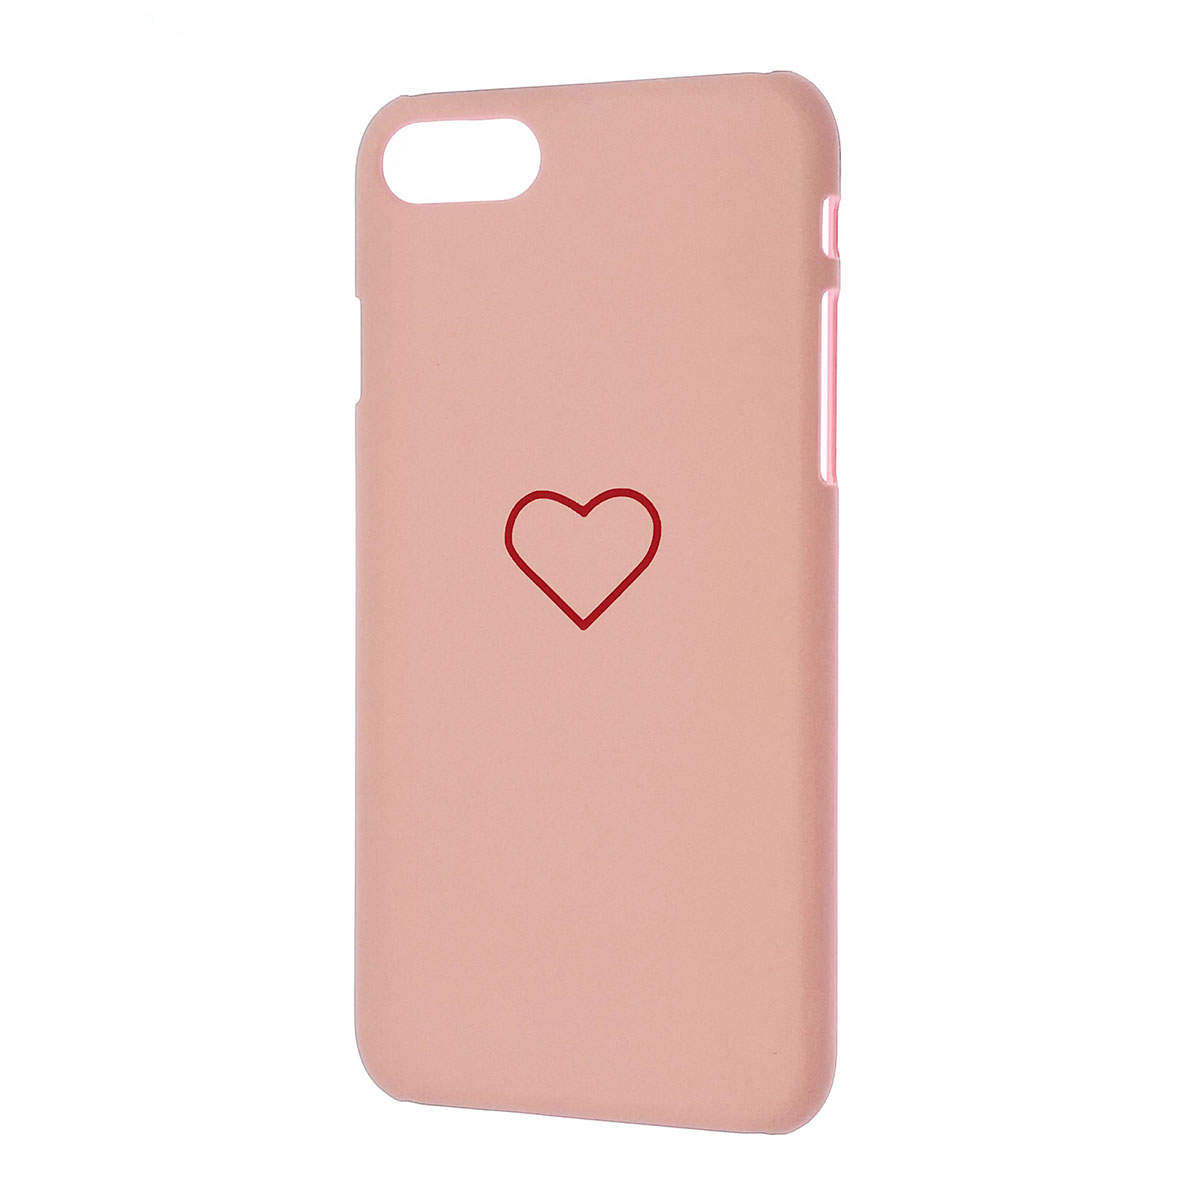 Чехол накладка для APPLE iPhone 7, iPhone 8, пластик, матовый, рисунок Сердце, цвет розовый.